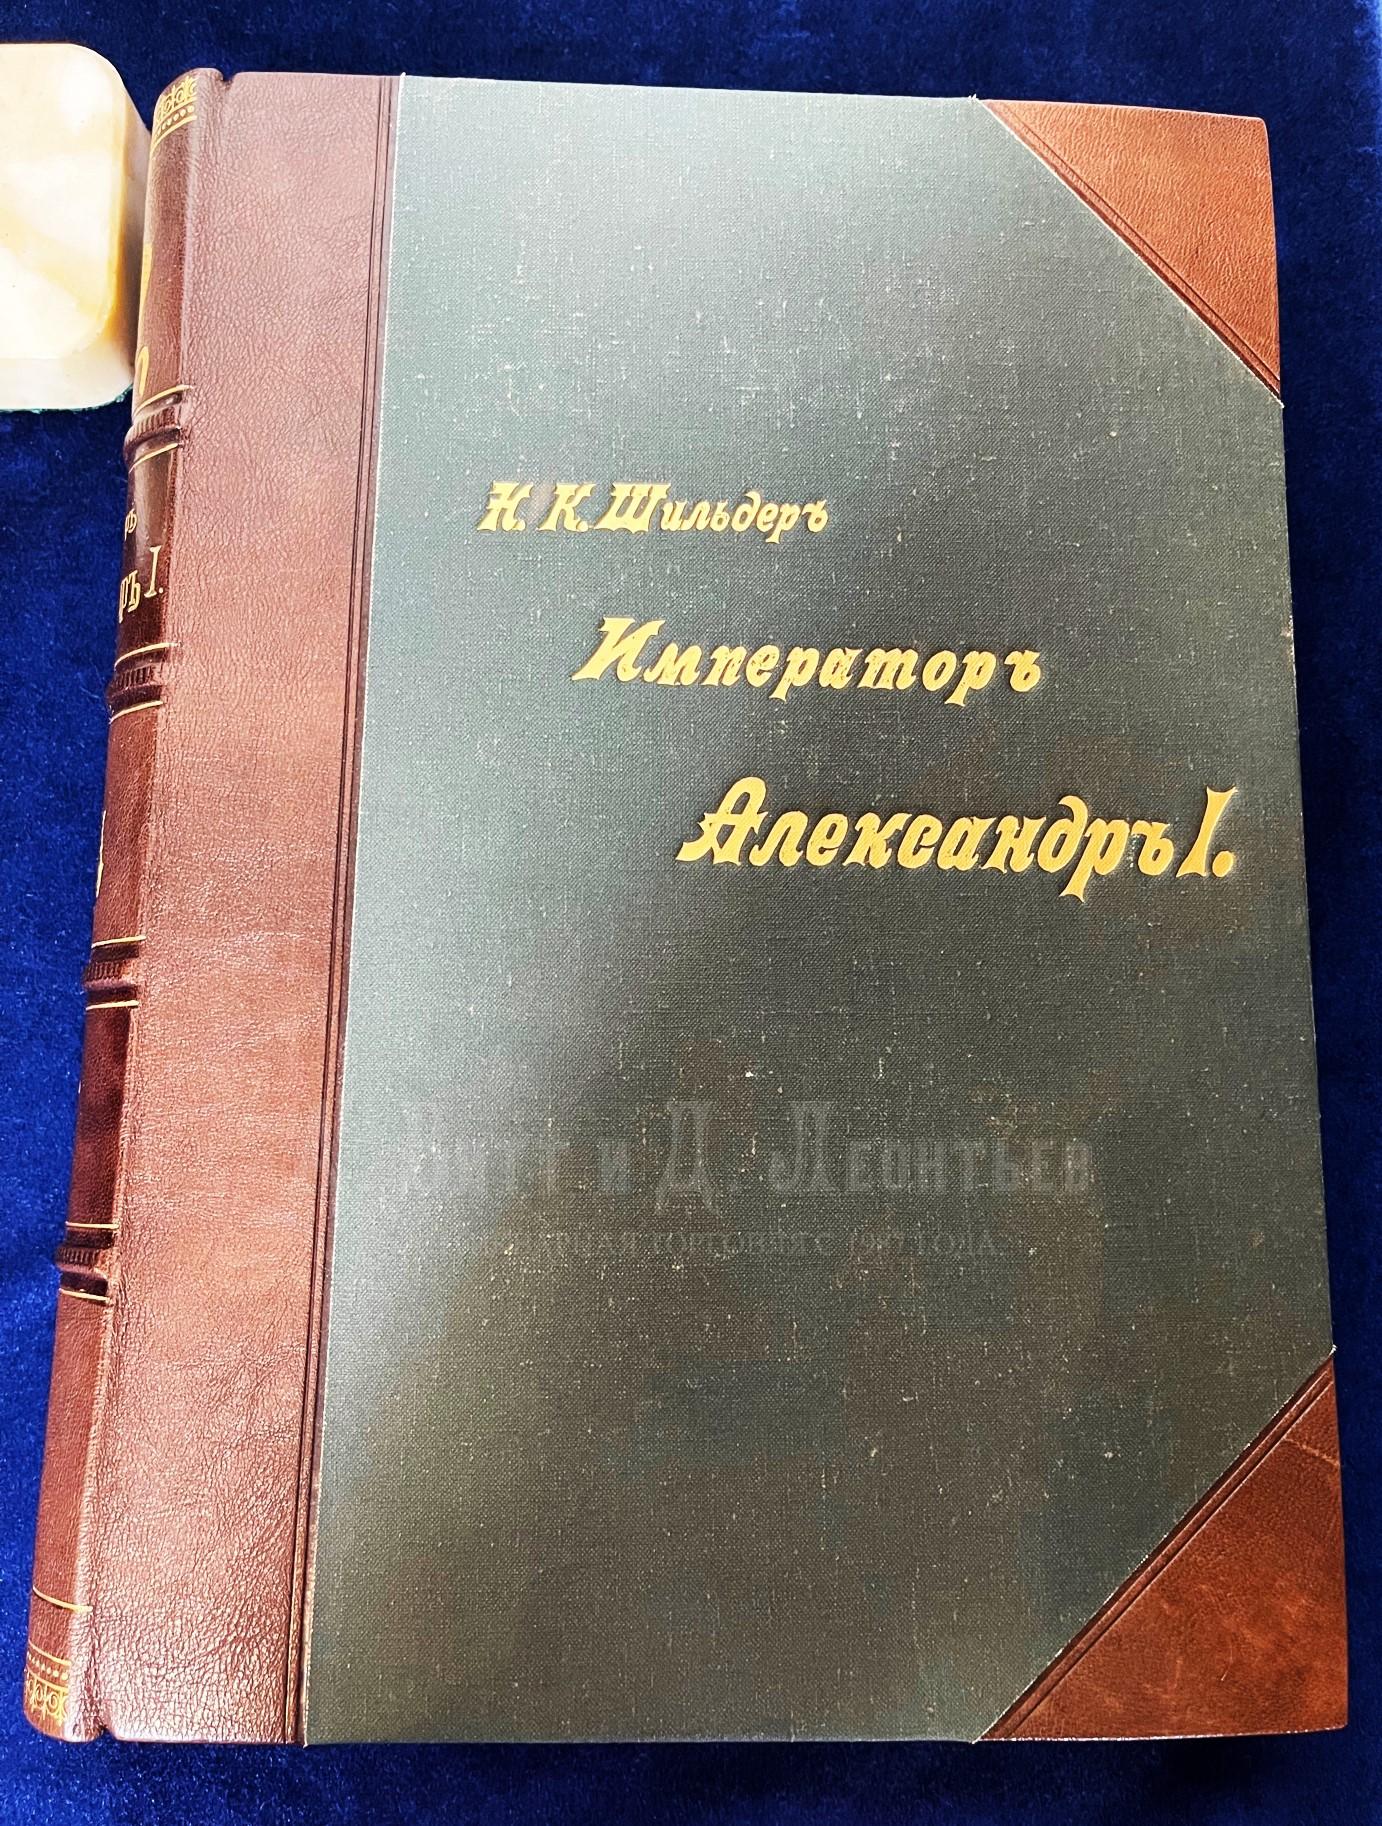 Книга Александр Первый Шильдер